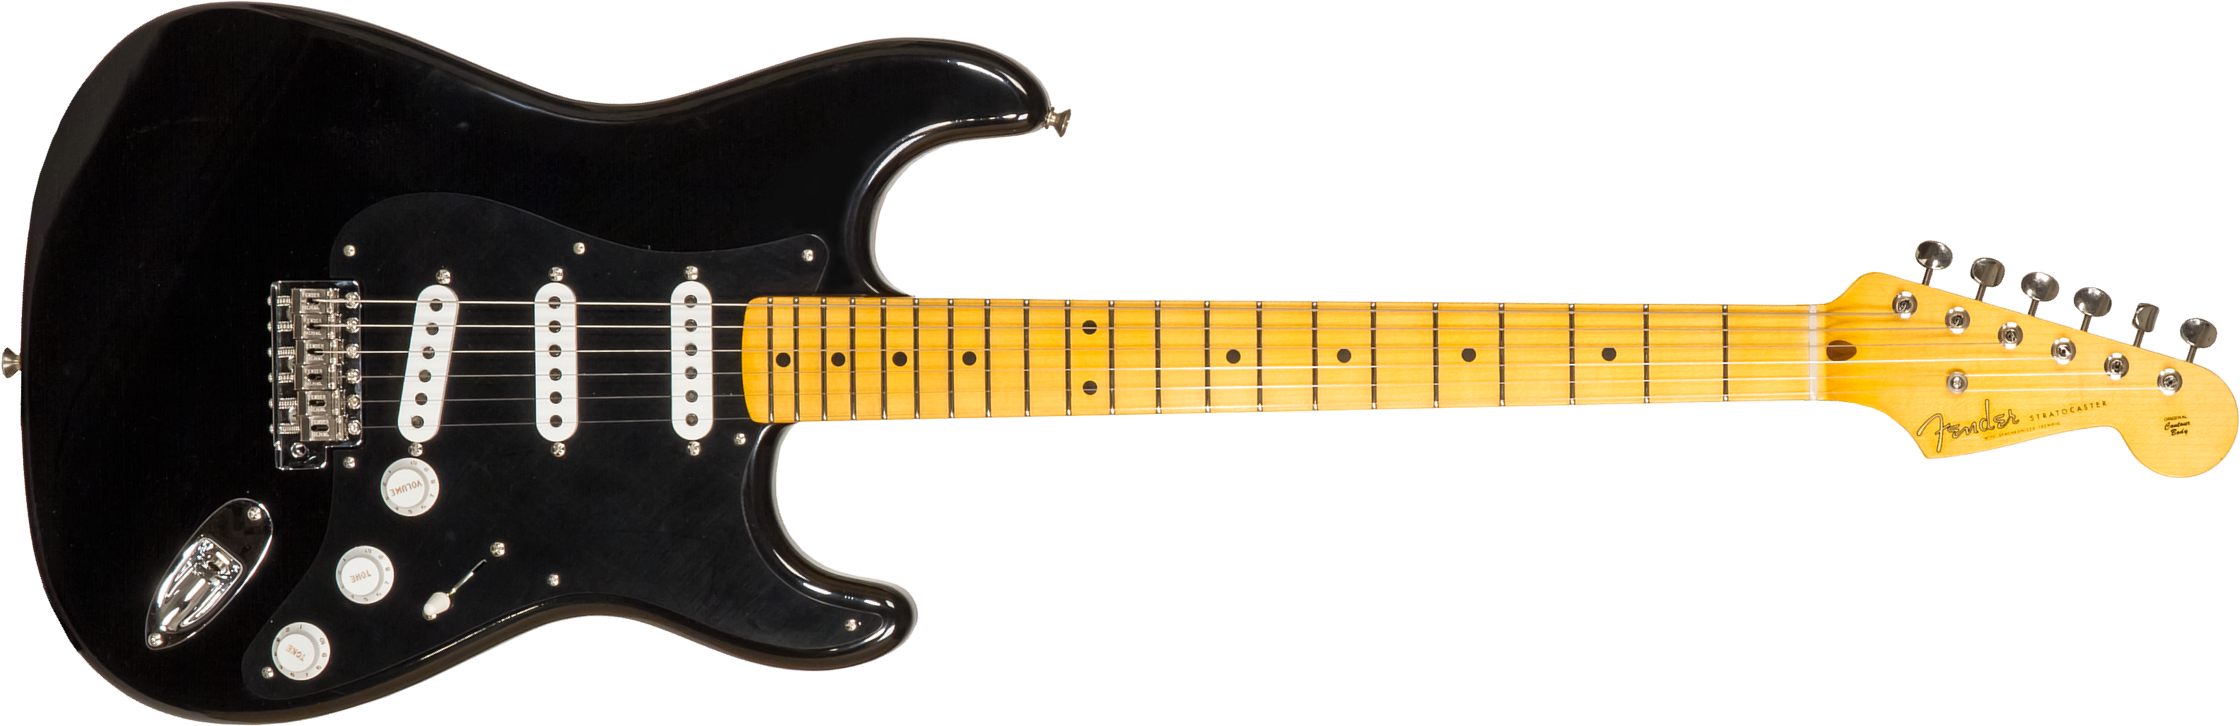 Fender Custom Shop Strat 1955 3s Trem Mn #r127877 - Closet Classic Black - Guitare Électrique Forme Str - Main picture